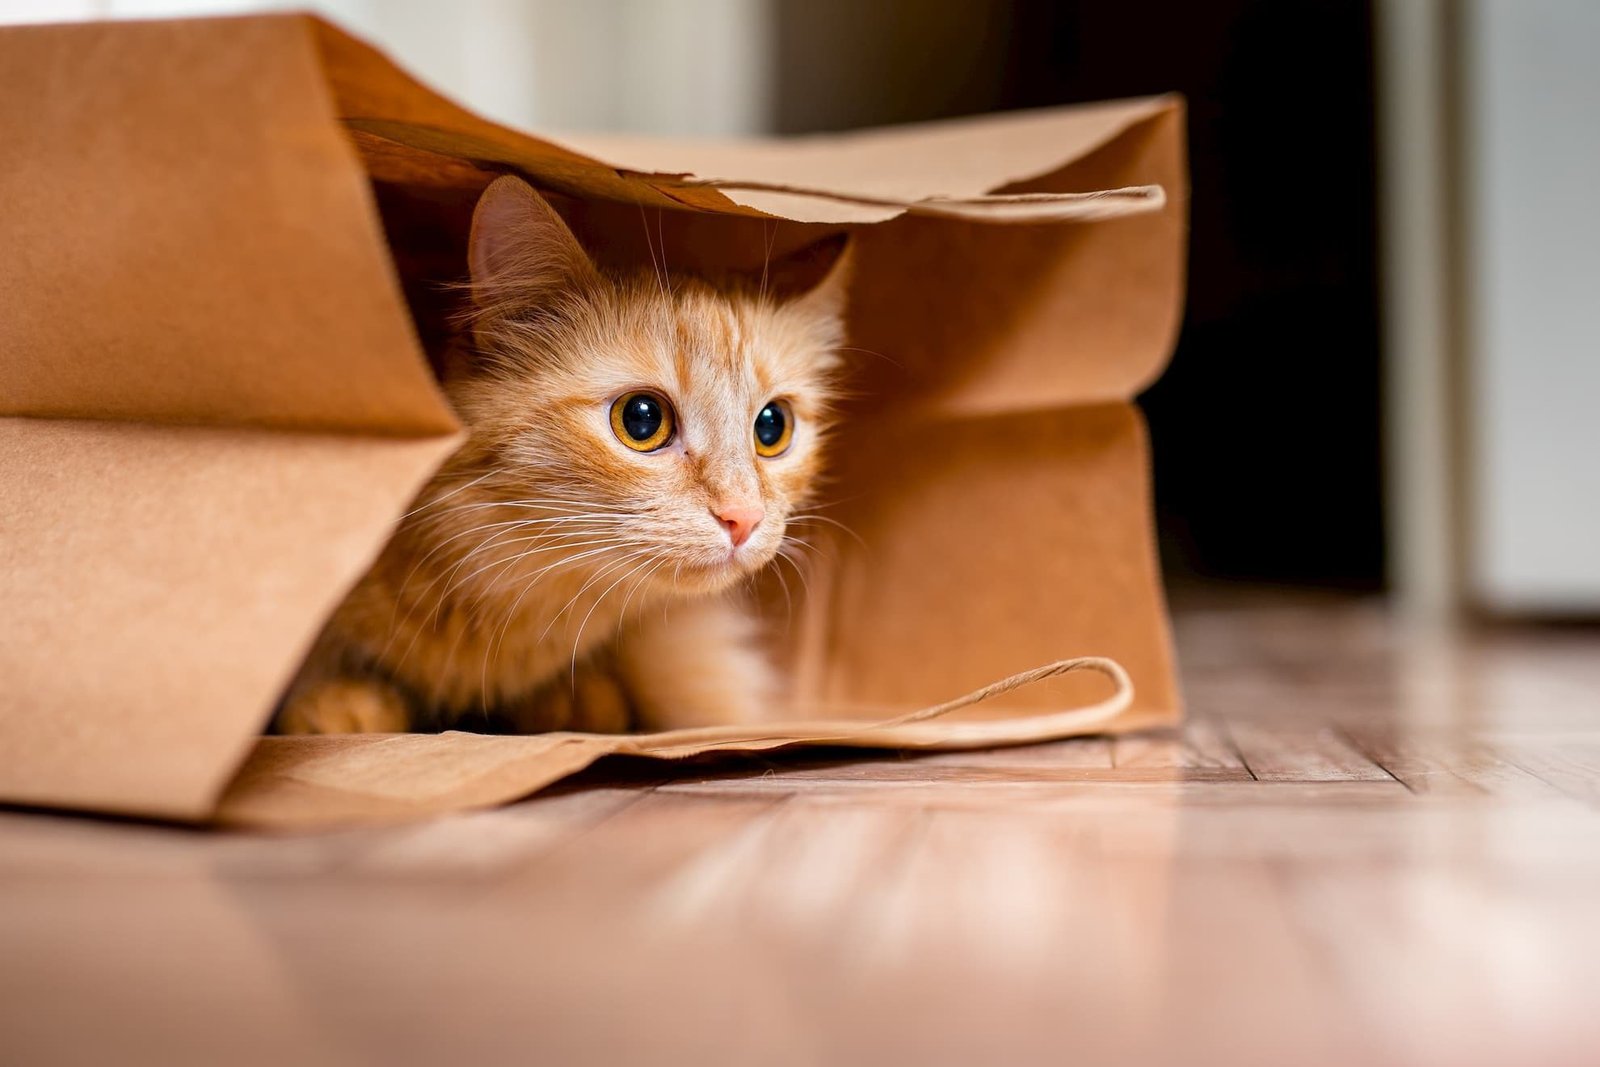 Hiding behavior changes in cat